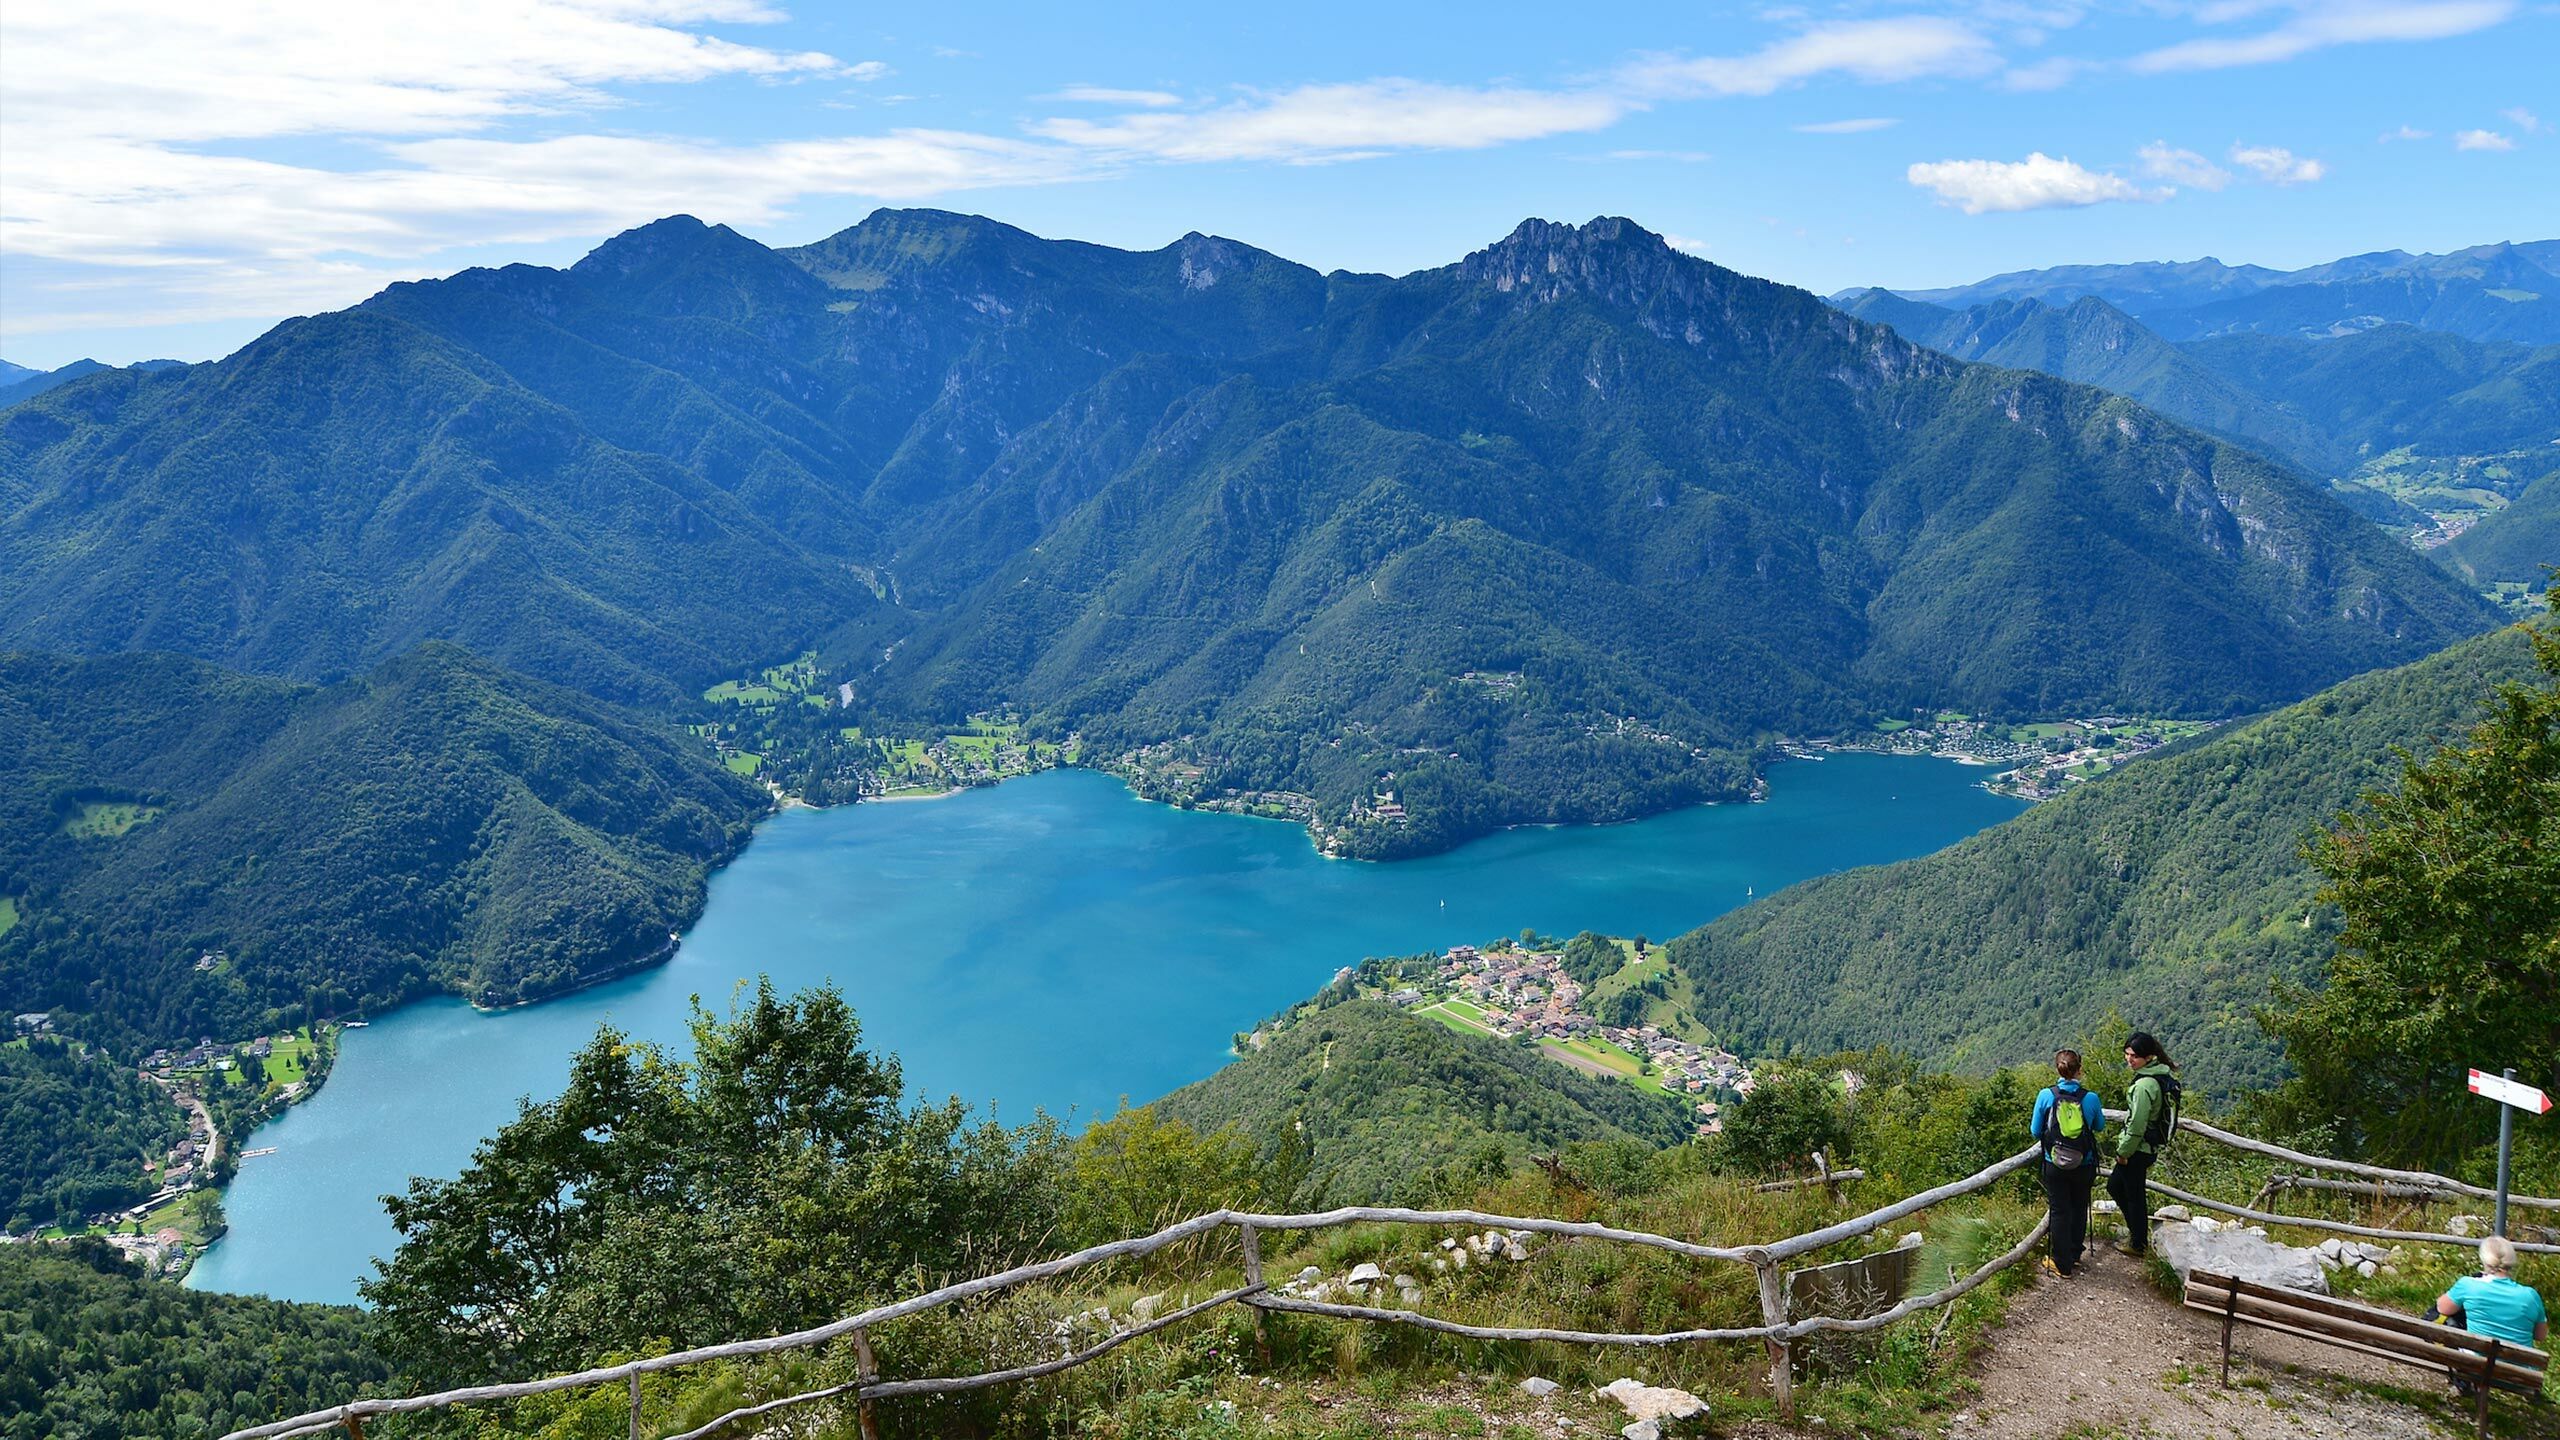 Crosina Holiday - appartamenti vicino al Lago di Ledro in Trentino per una vacanza in coppia o in famiglia  Location e dintorni della Val di Ledro